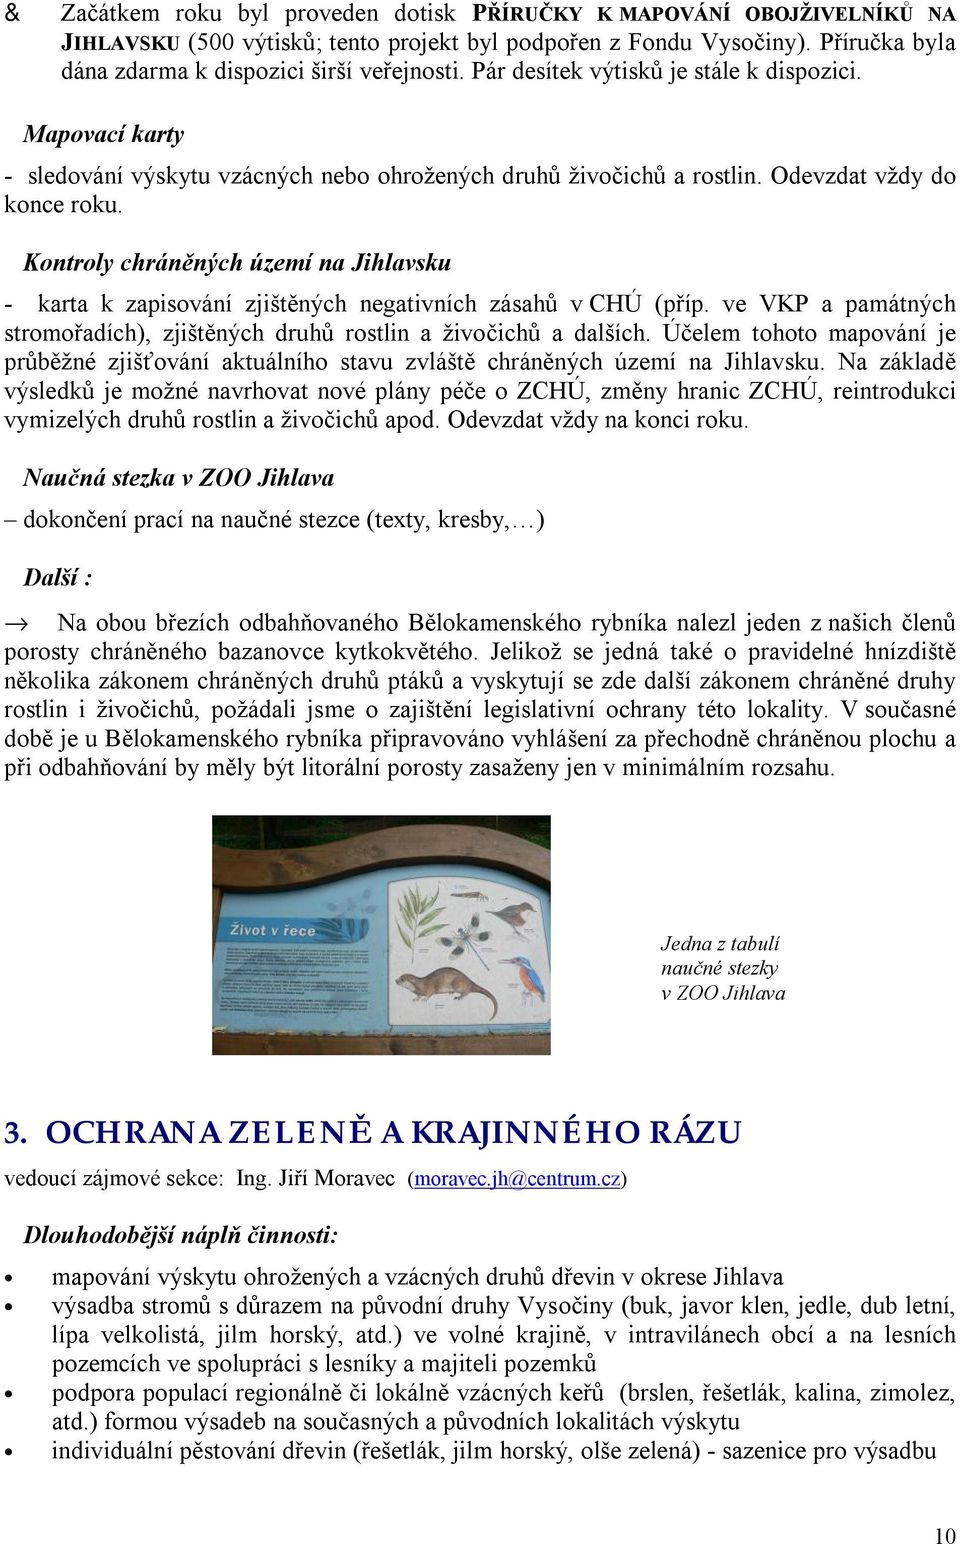 Kontroly chráněných území na Jihlavsku - karta k zapisování zjištěných negativních zásahů v CHÚ (příp. ve VKP a památných stromořadích), zjištěných druhů rostlin a živočichů a dalších.